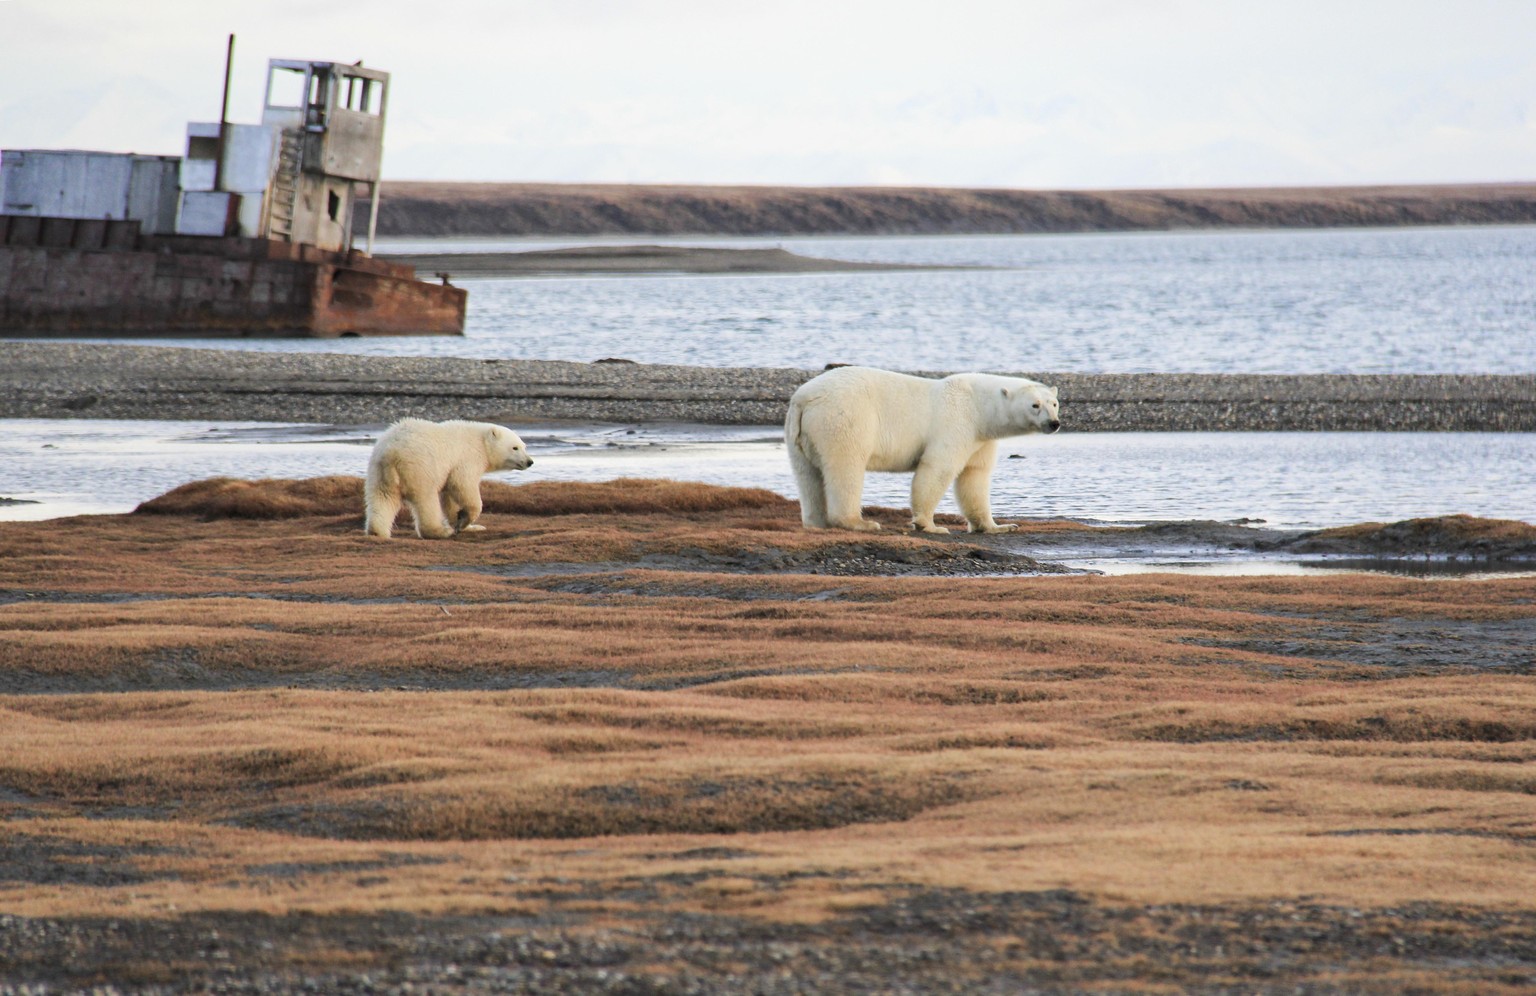 Eisbären in Kaktovik, Alaska
https://www.usgs.gov